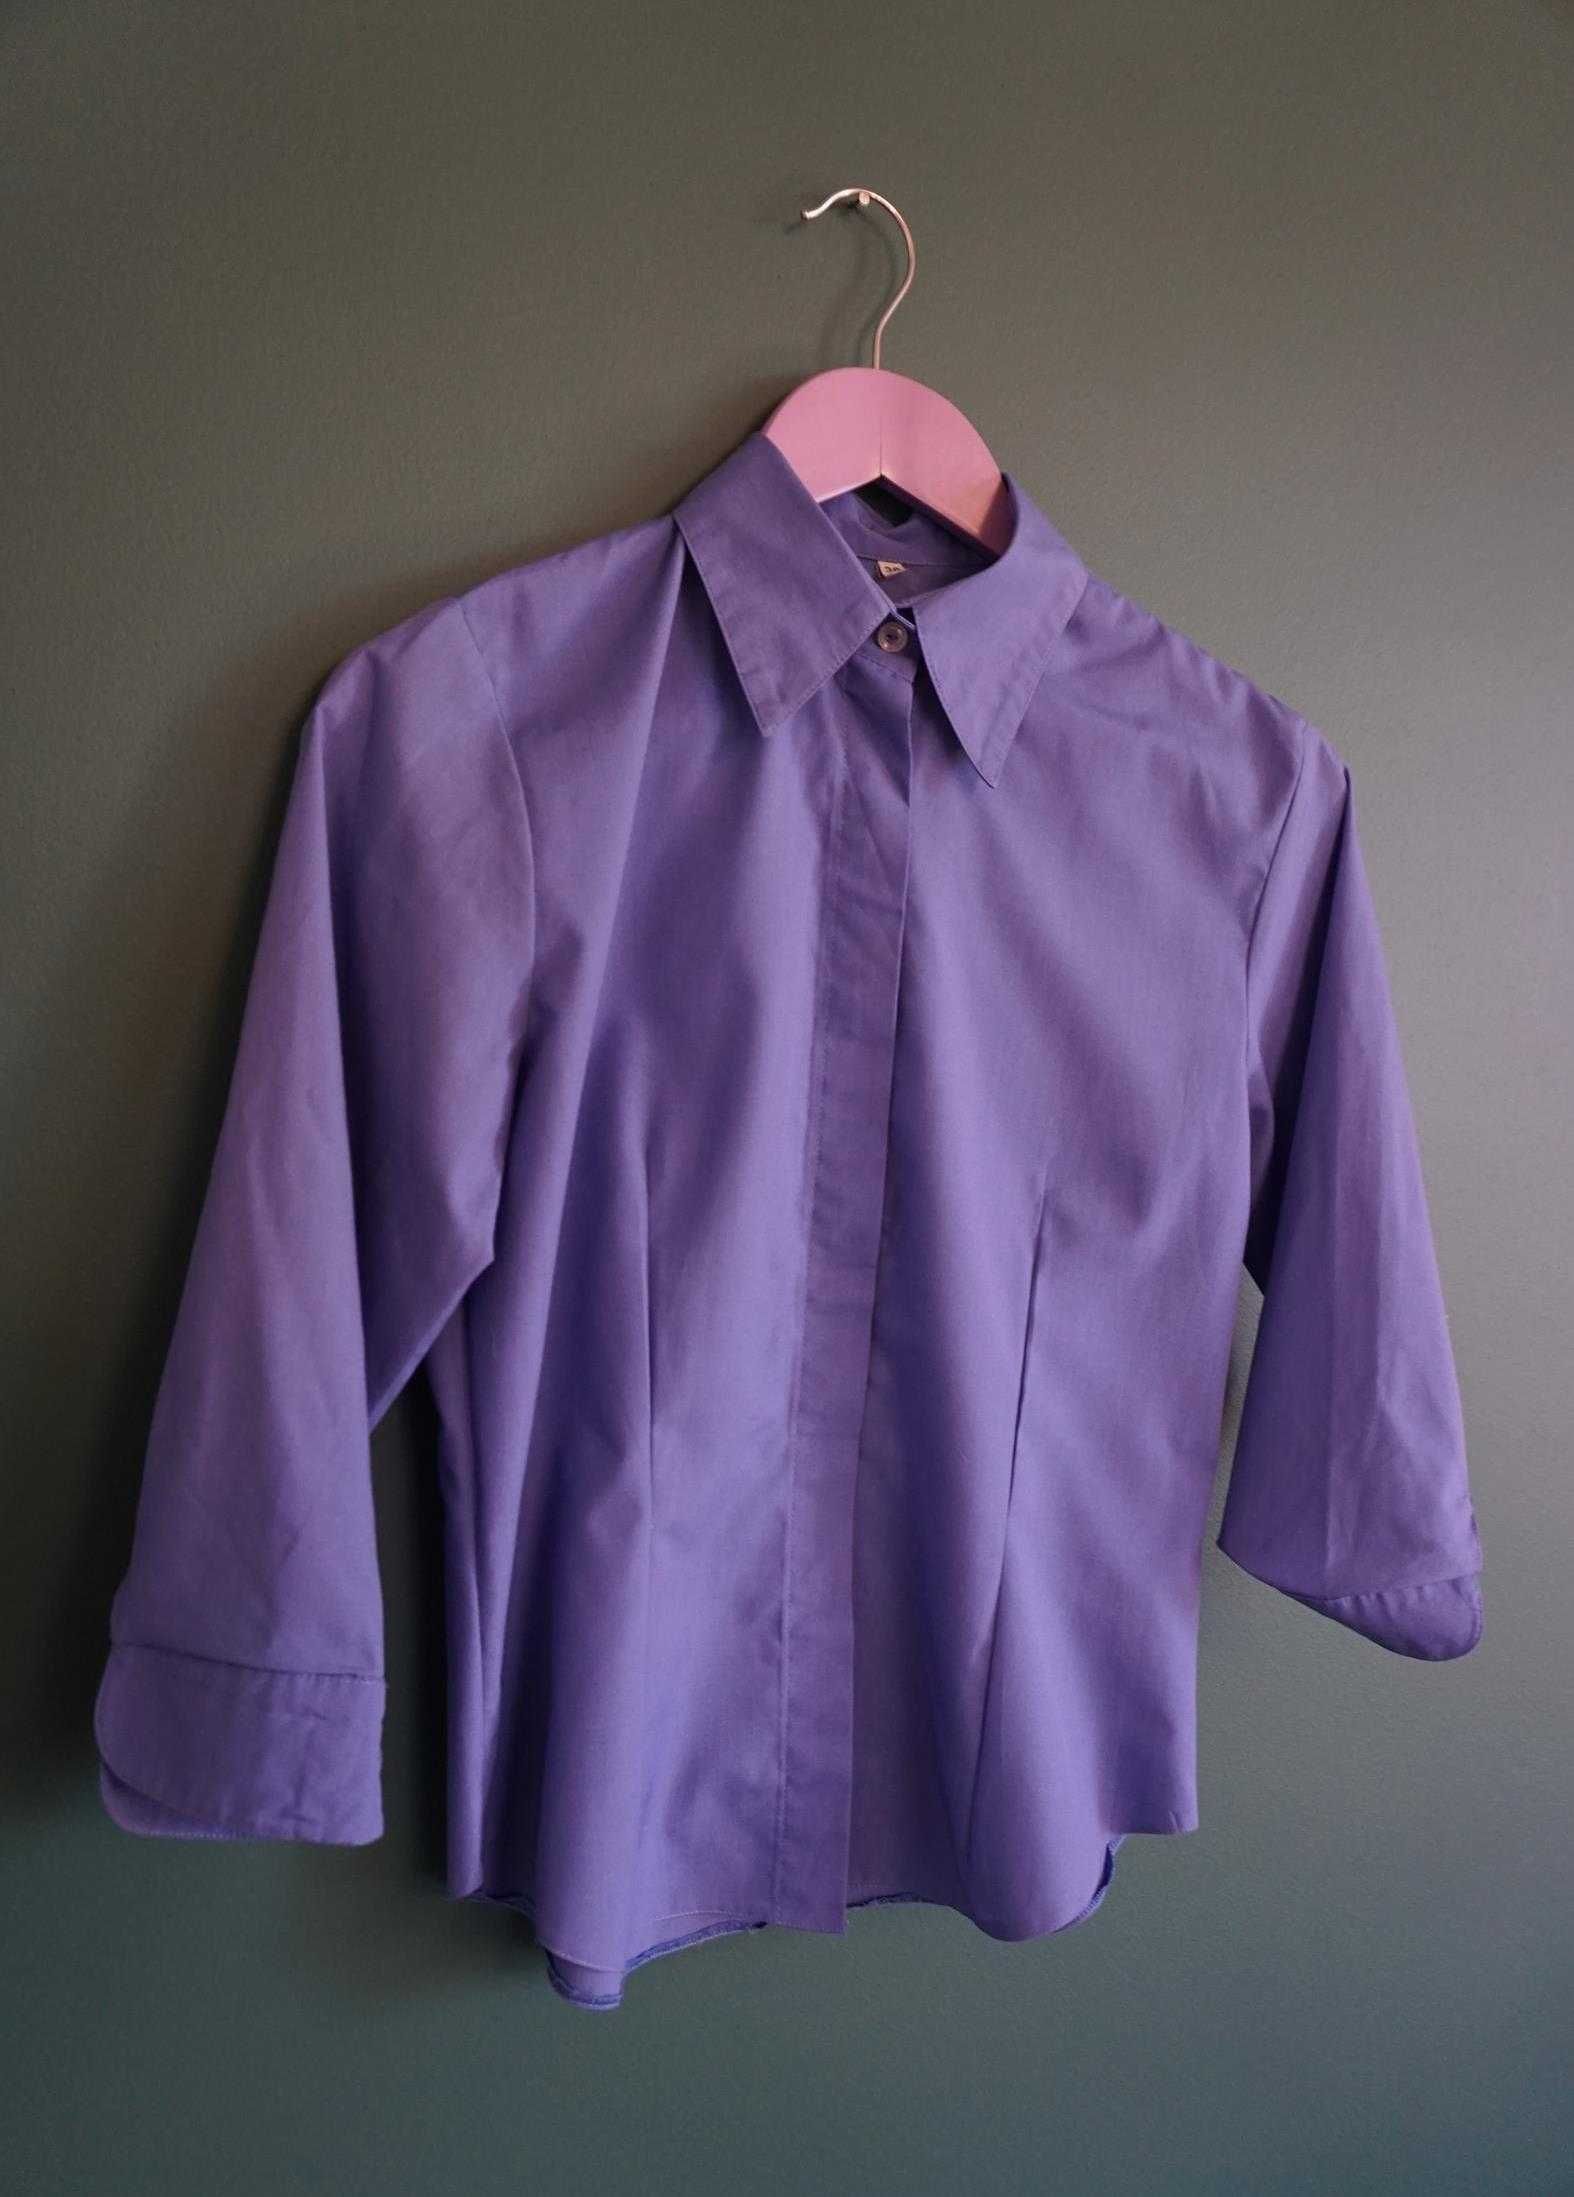 Koszula bluzka M 38 lawendowa lilac niebieska basic vintage rękaw 3/4